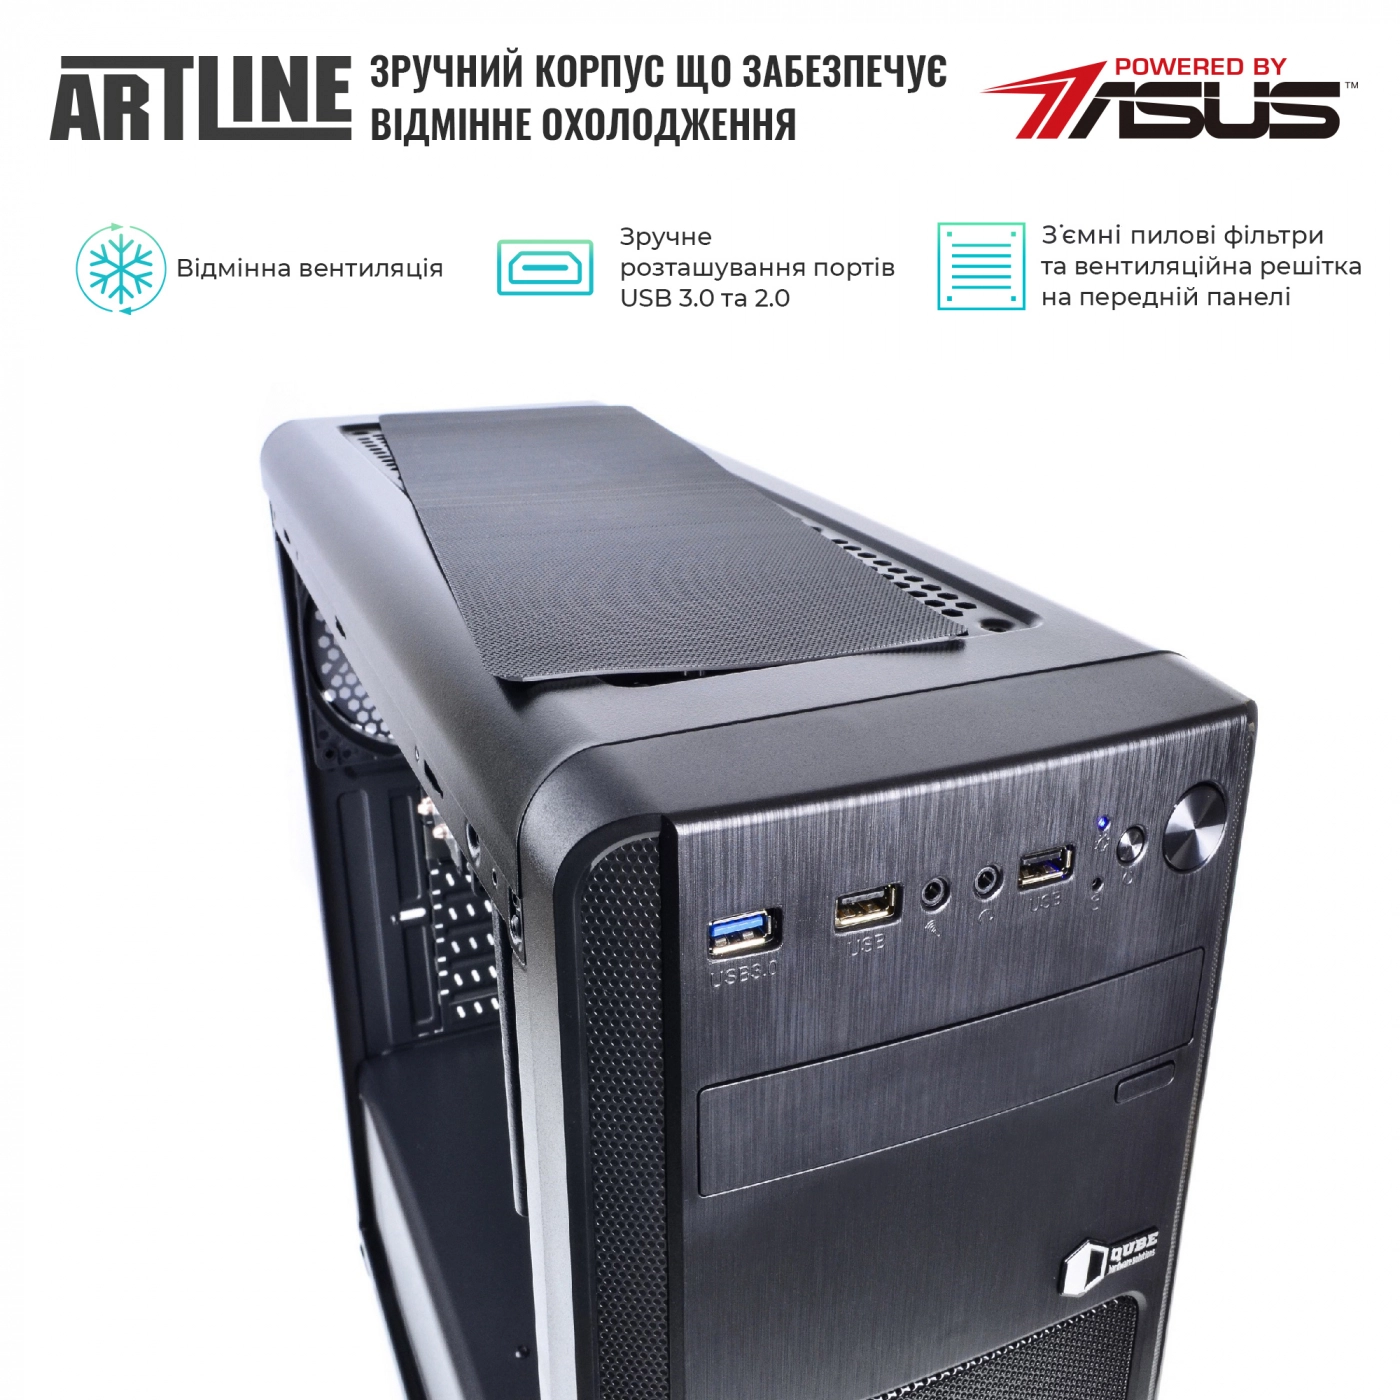 Купить Сервер ARTLINE Business T25v31 - фото 2